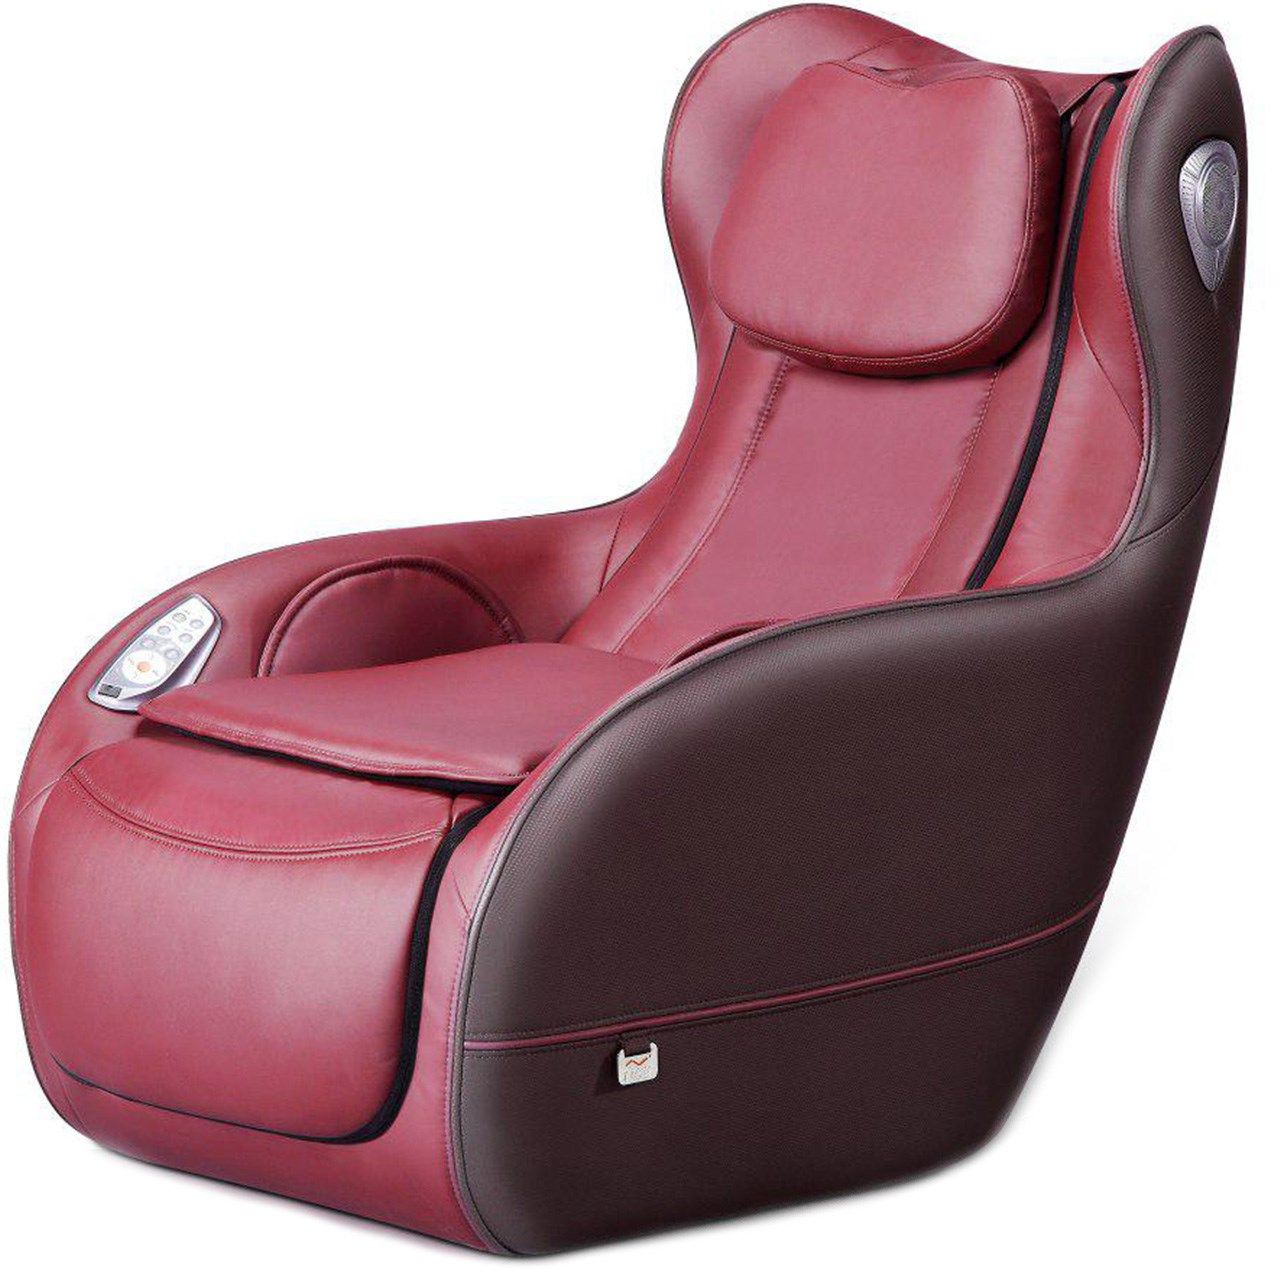 صندلی ماساژ آی رست مدل SL-A155 -  - 1